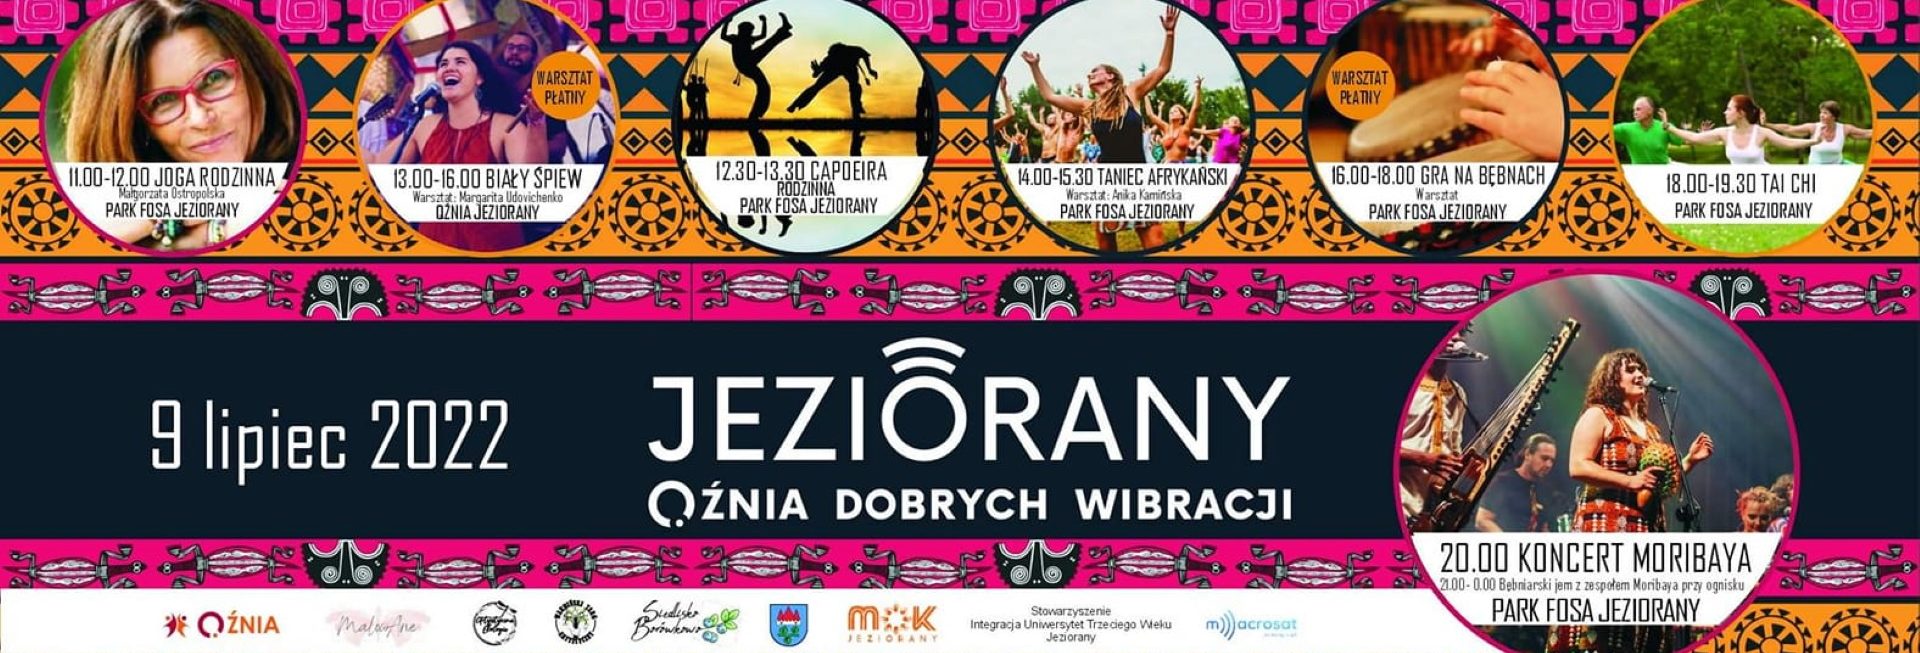 Plakat zapraszający do Jezioran na Qźnia Dobrych Wibracji - Warmiński TARG Artystyczny w Jezioranach 2022.